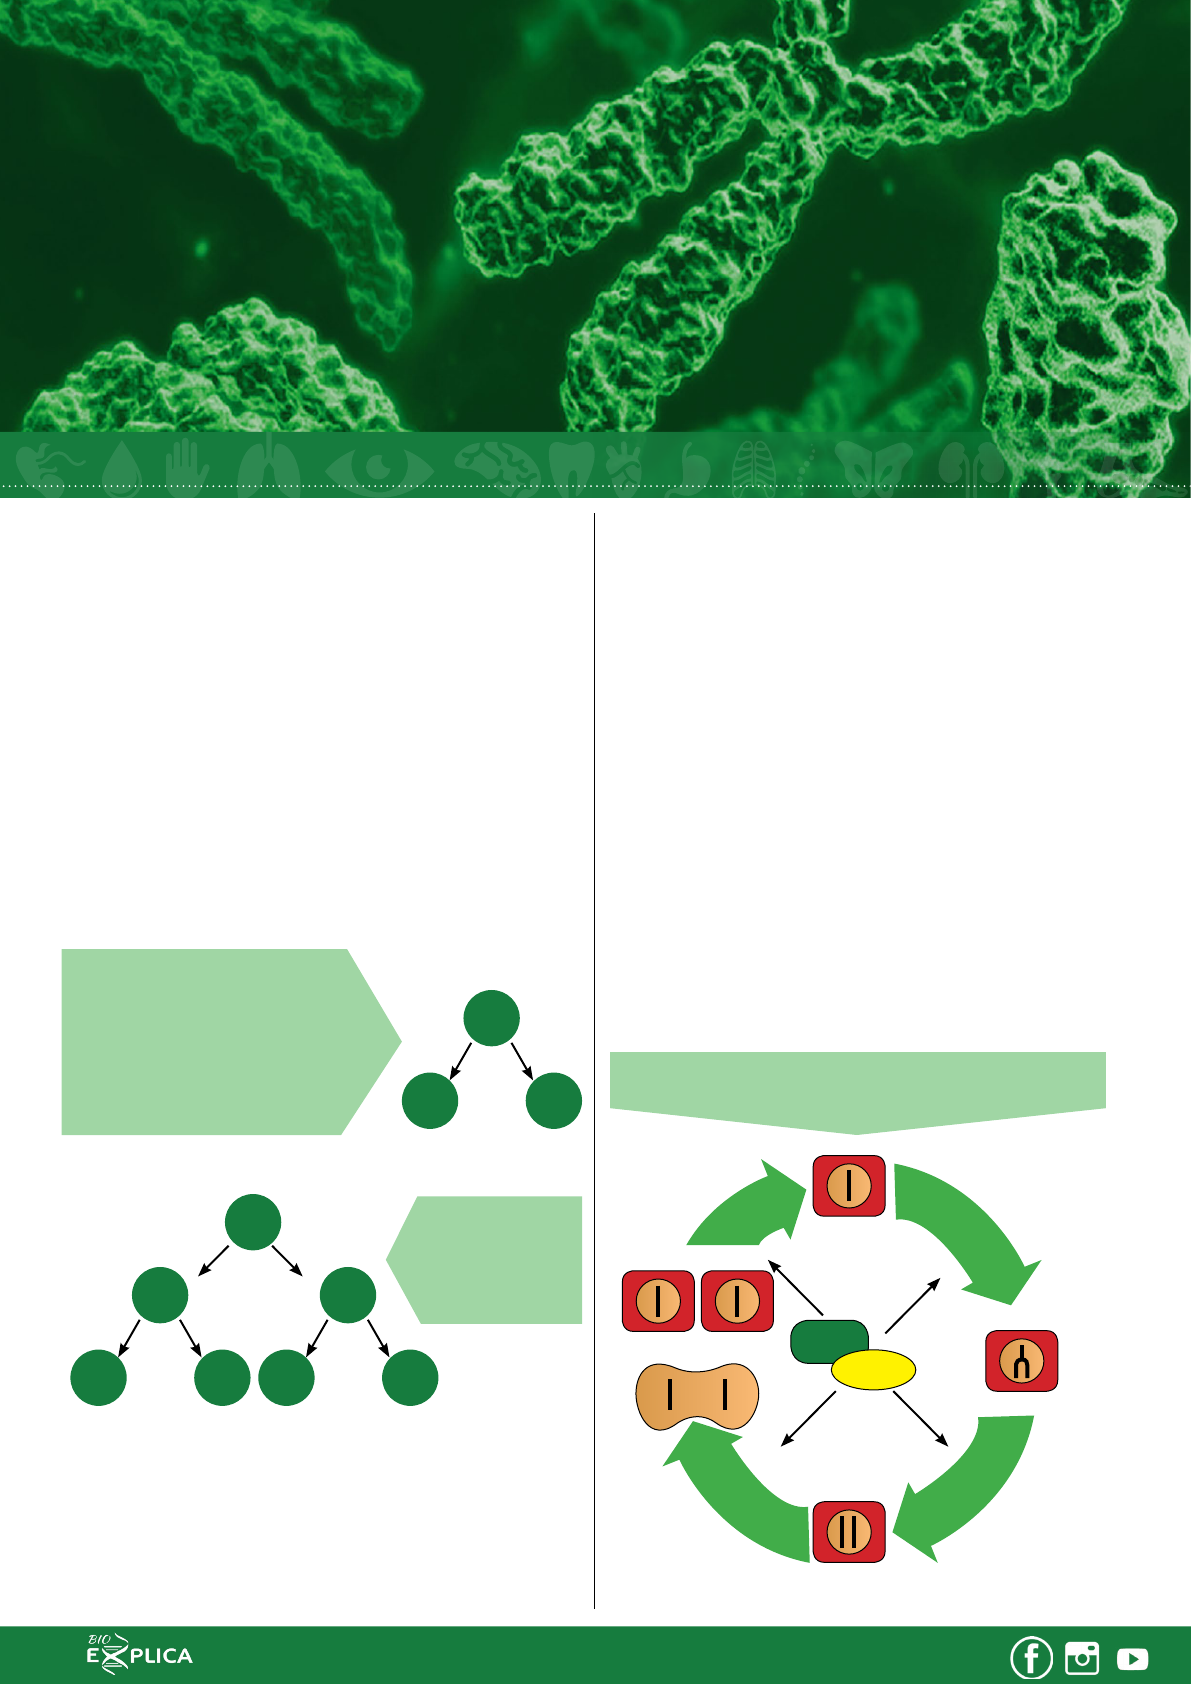 Bioexplica - Kennedy Ramos - Antes da célula começar a divisão celular  (mitose), ela passa por um período de crescimento, chamado interfase. A  interfase pode ser dividia em: Período G1: maior crescimento